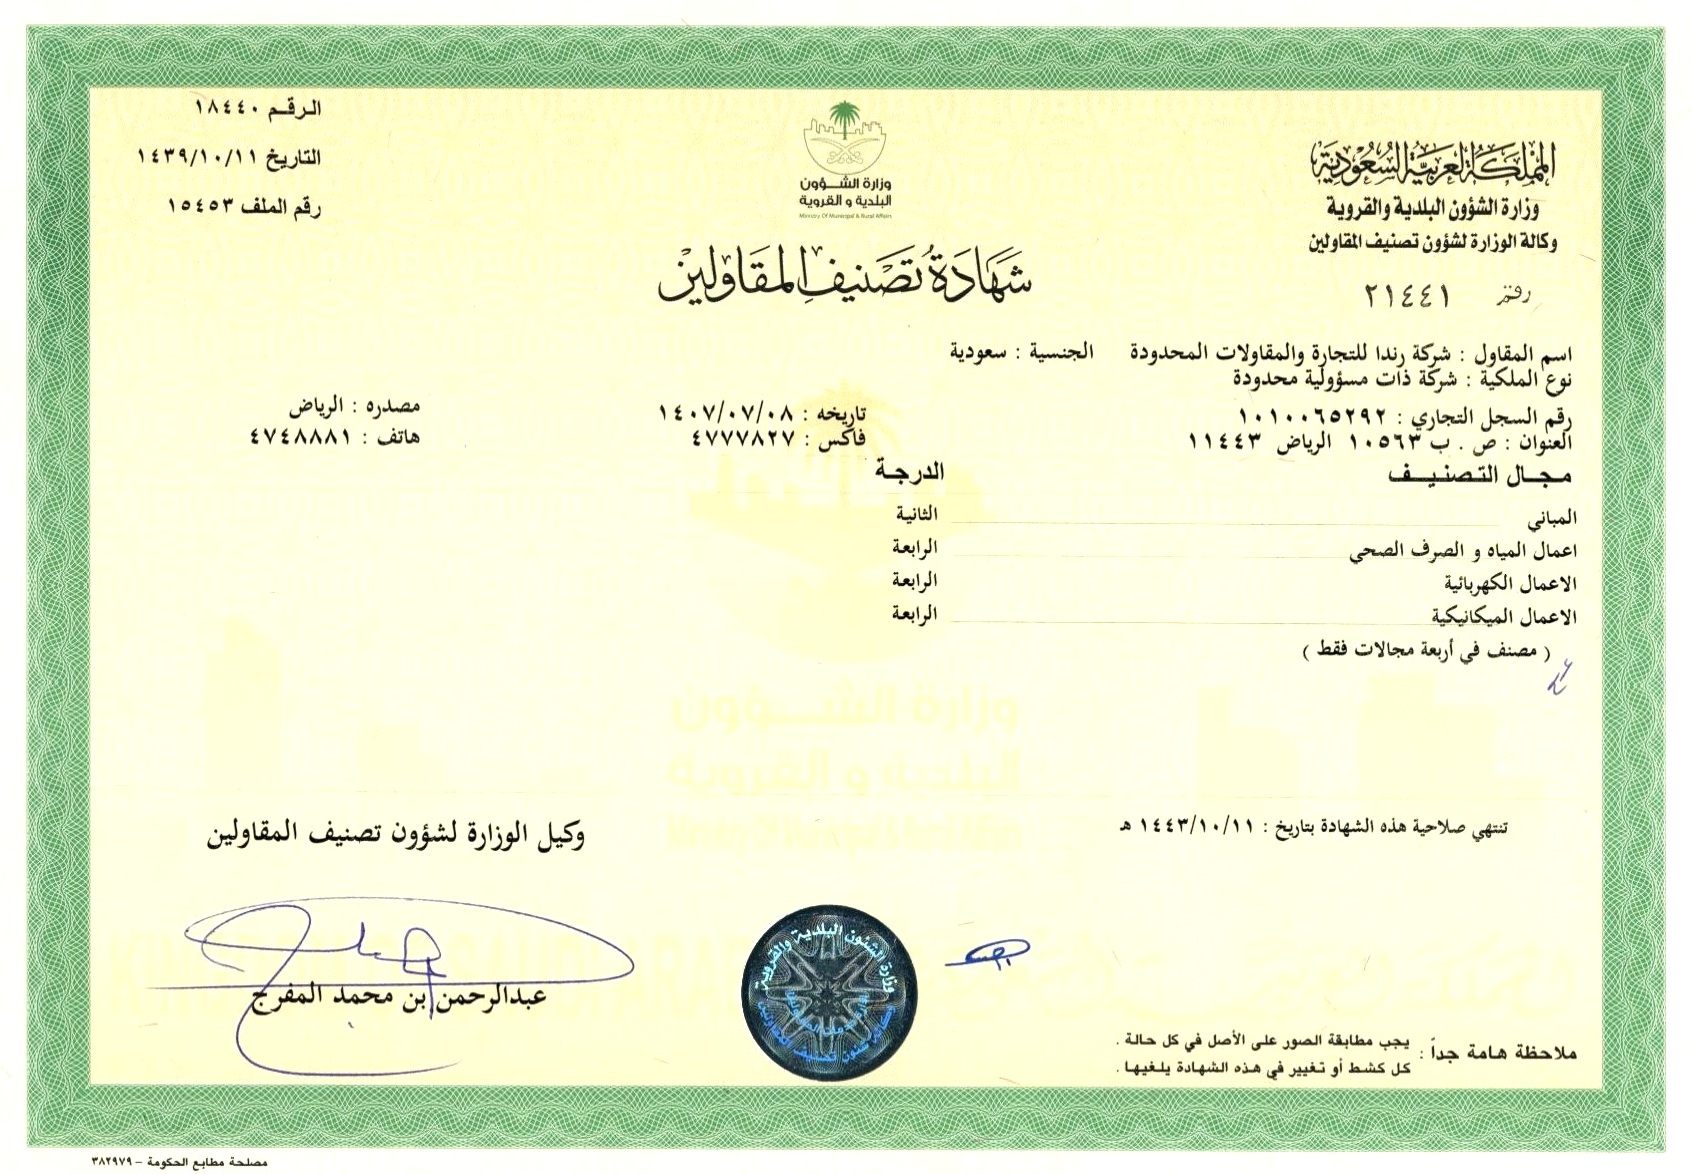 Rating Certificate